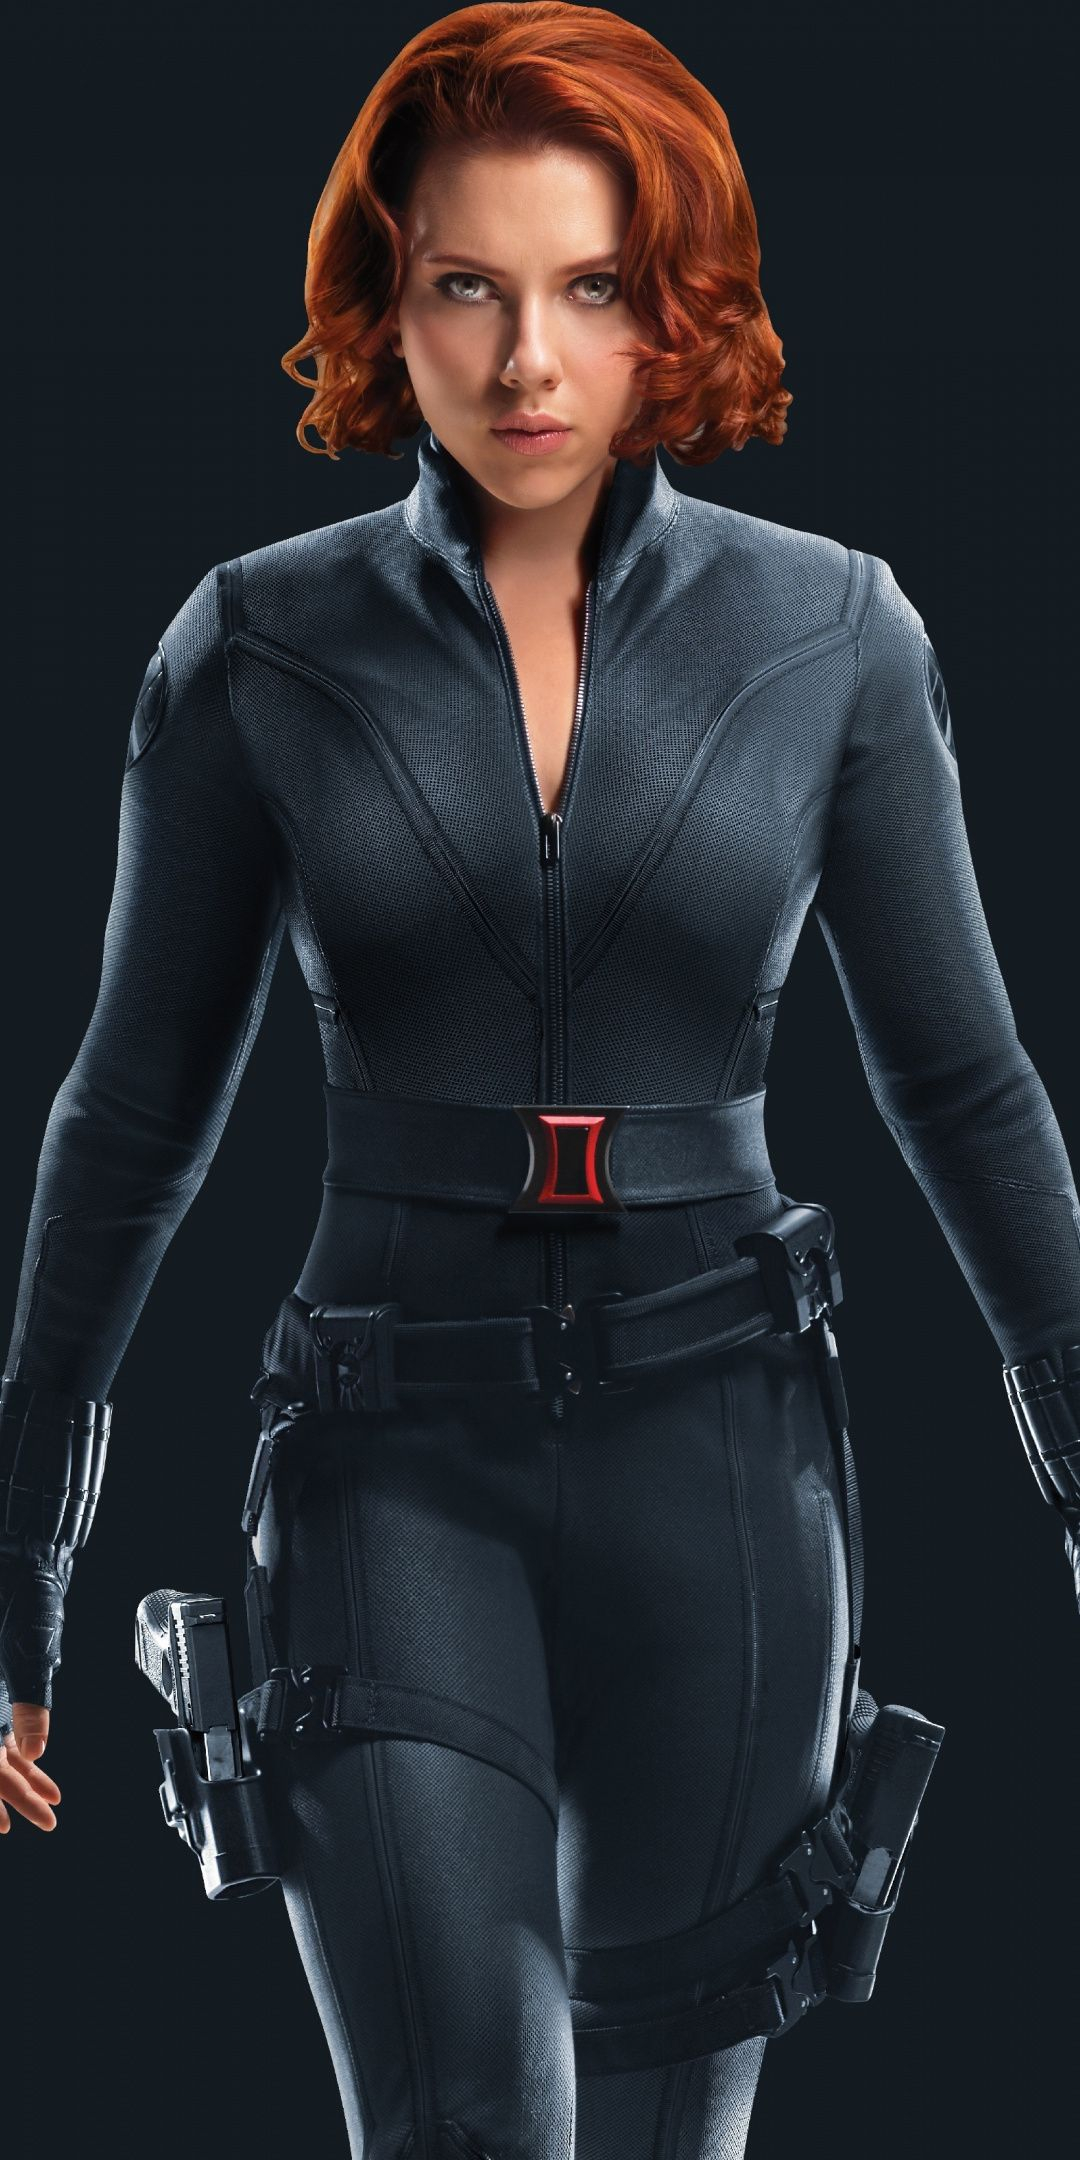 1080x2160 Scarlett Johansson Black Widow Wallpapers Top Free Scarlett Johansson Black Widow Backgrounds